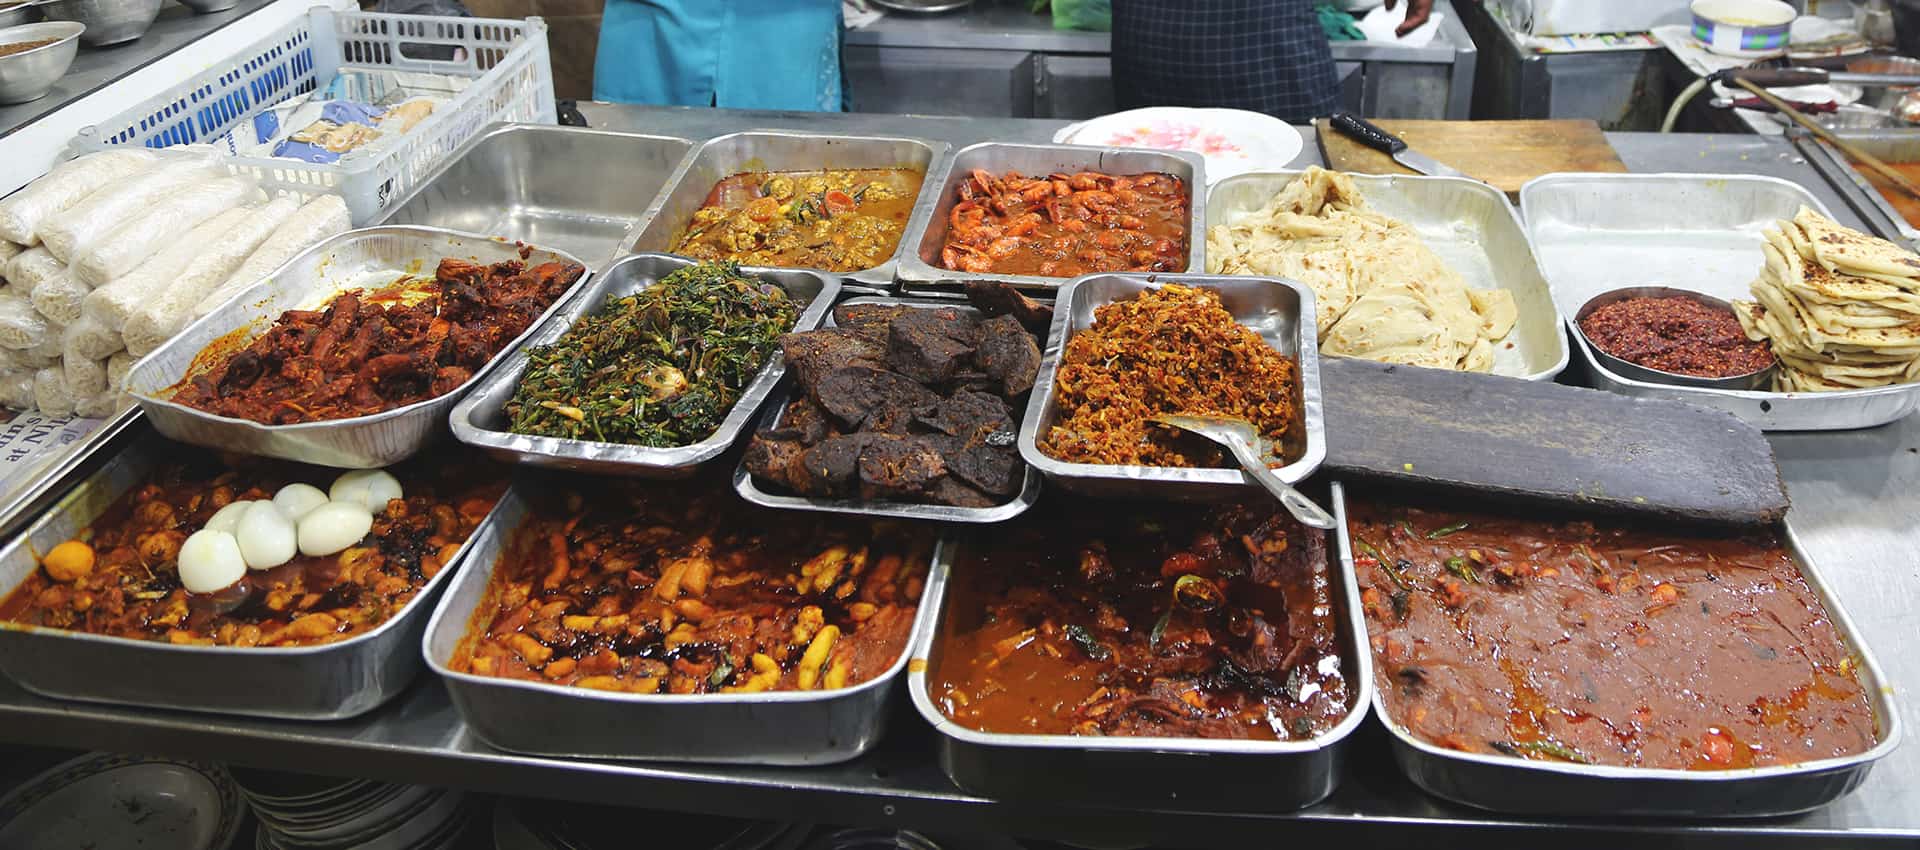 Colombo's Street Food Walk